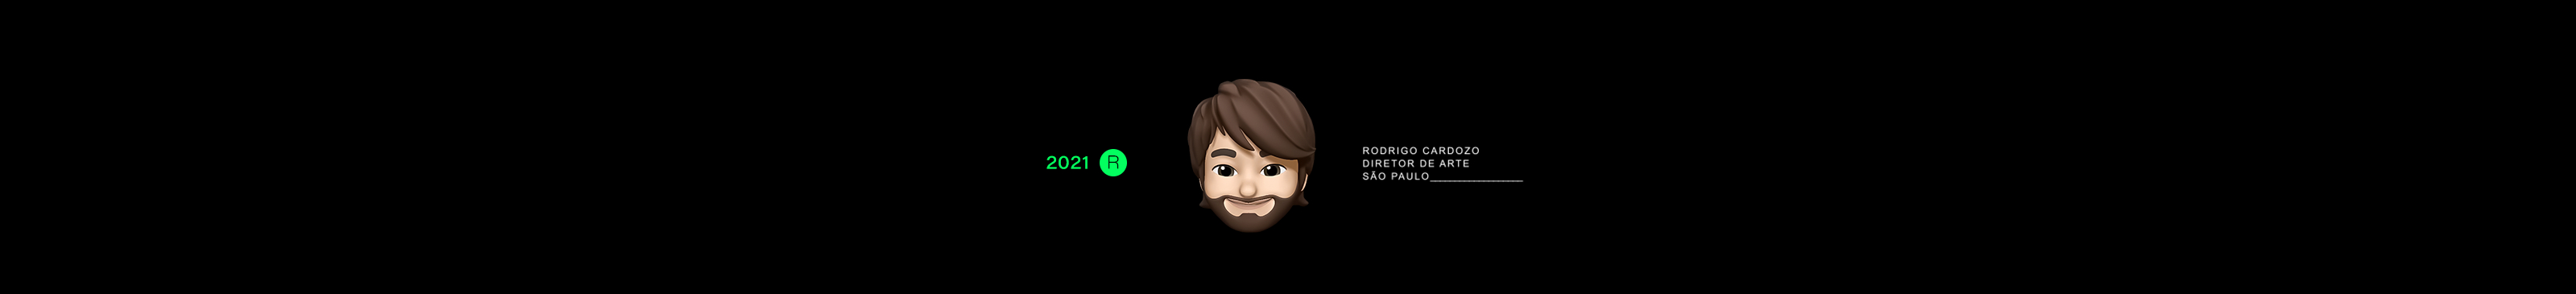 Banner profilu uživatele Rodrigo Cardozo